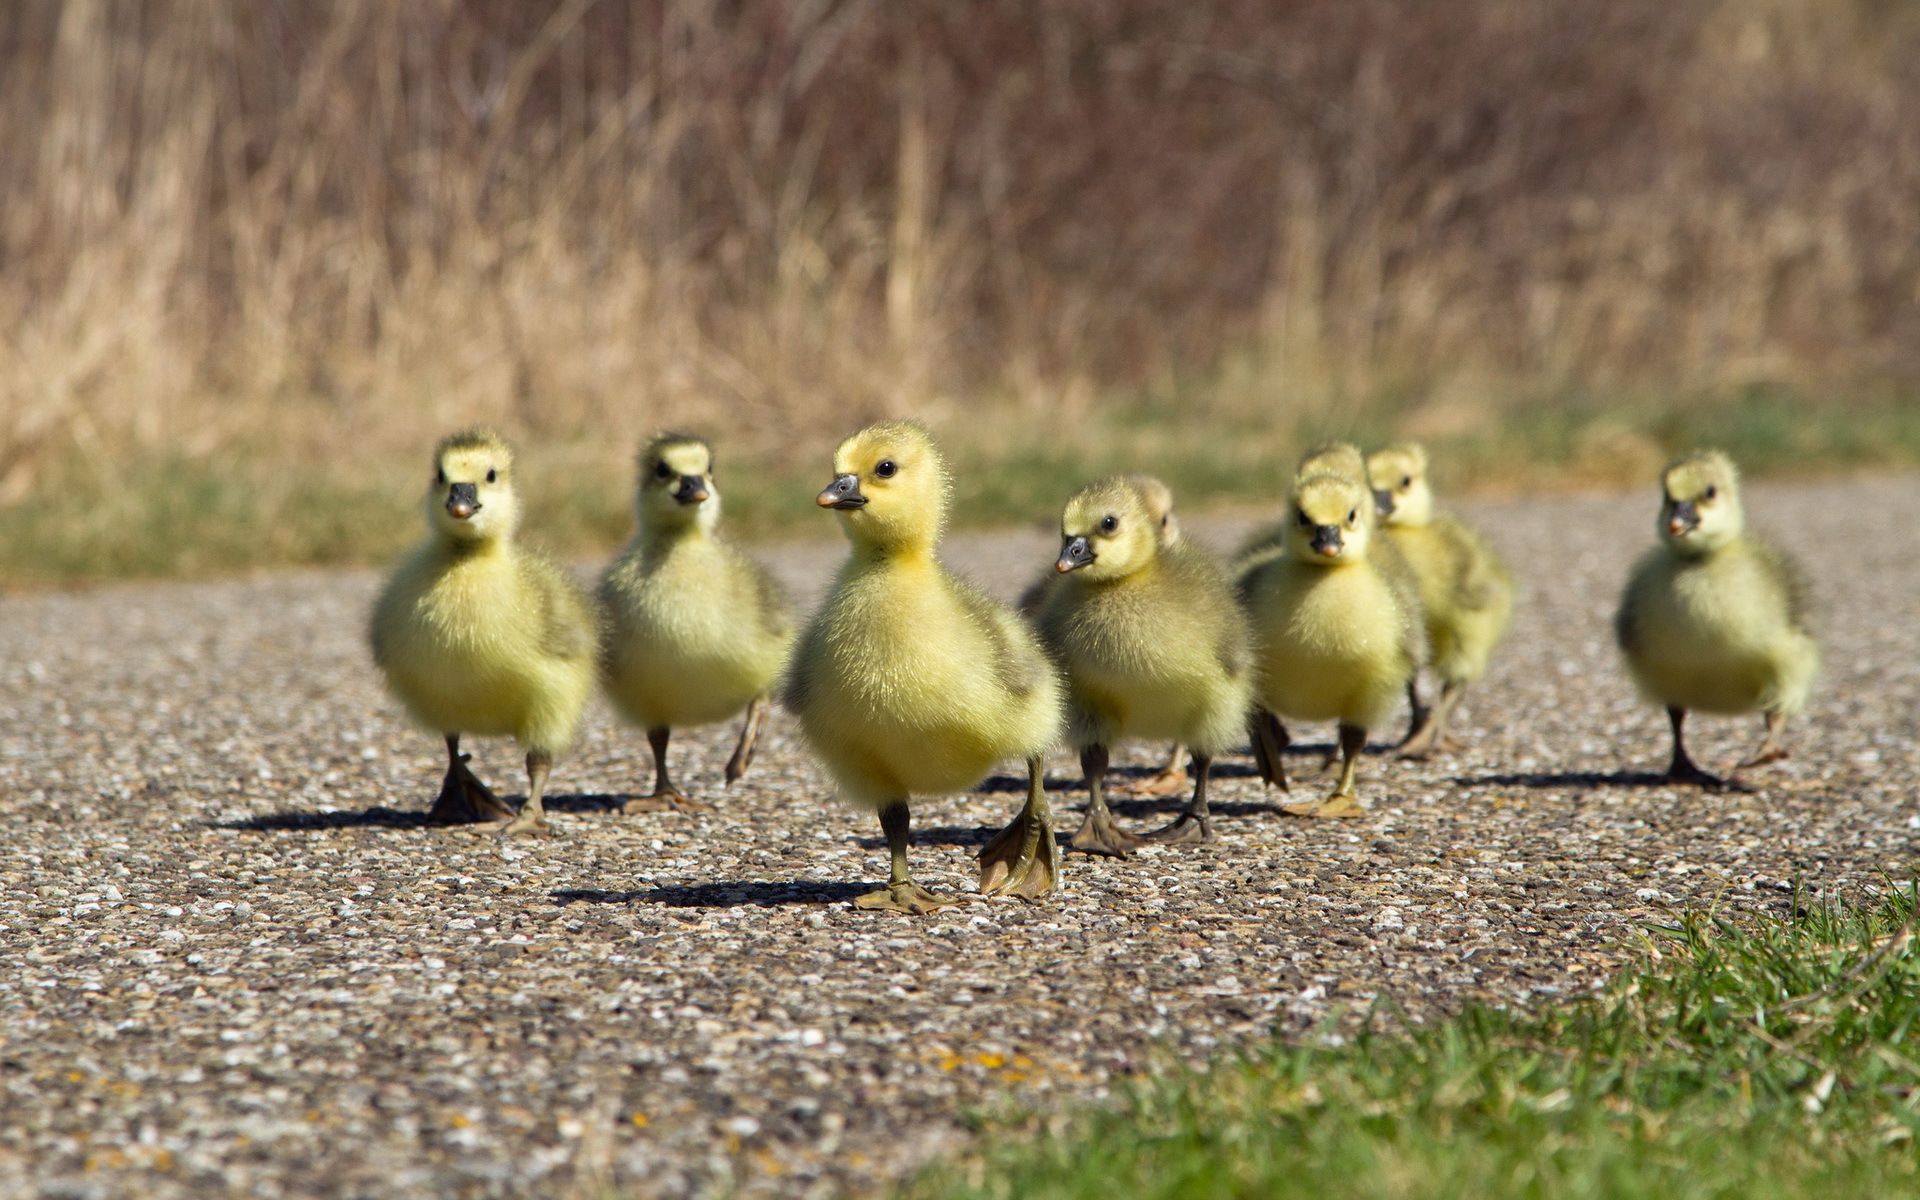 duck family